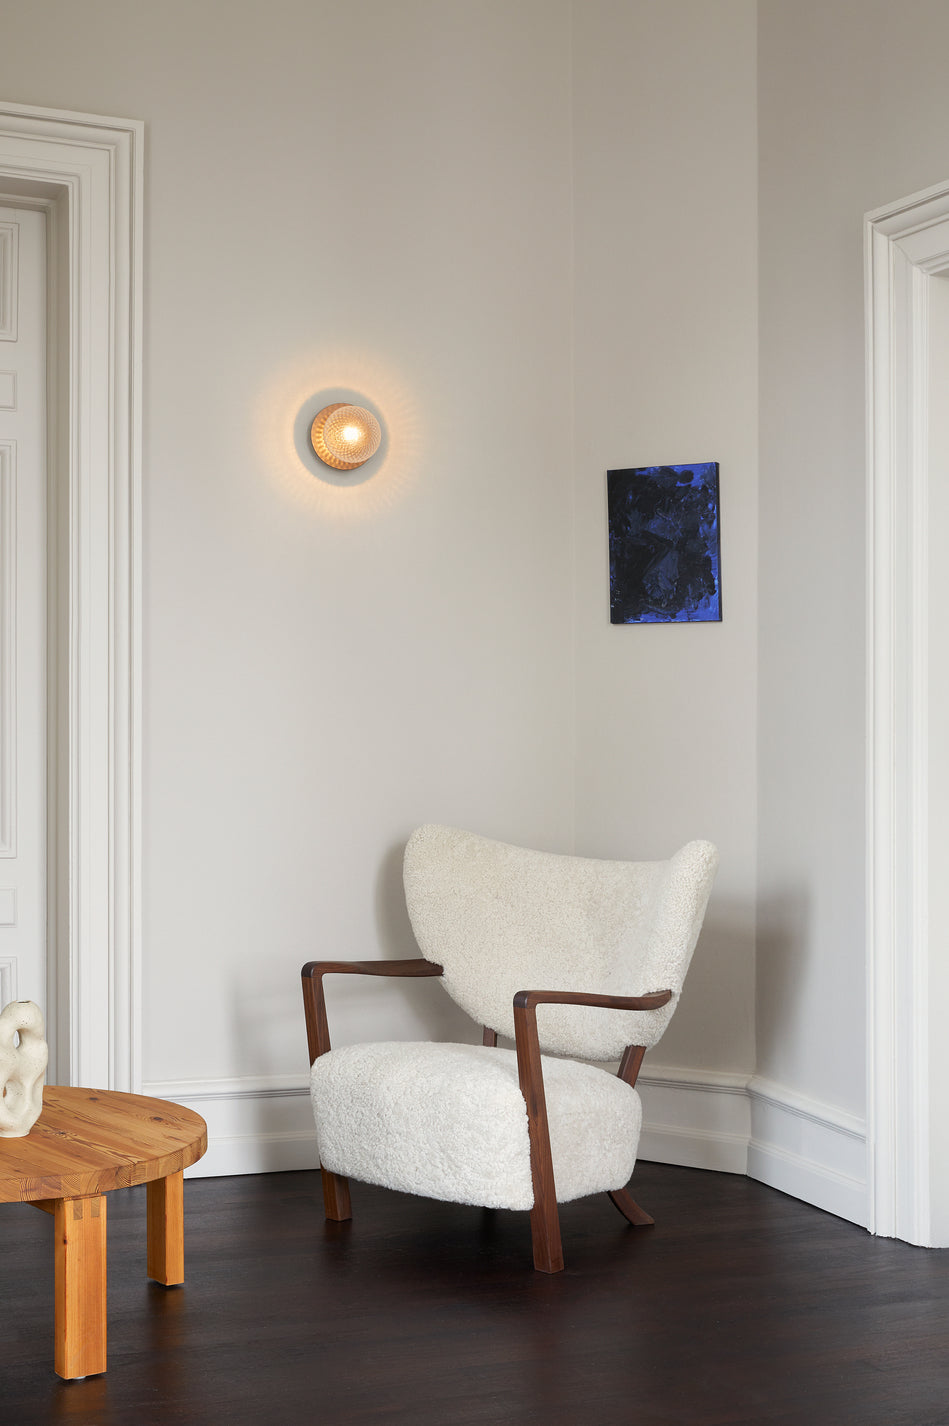 Væglampe med lampeskærm af klart optikglas og gylden fatning, hængende i dagligstuemiljø